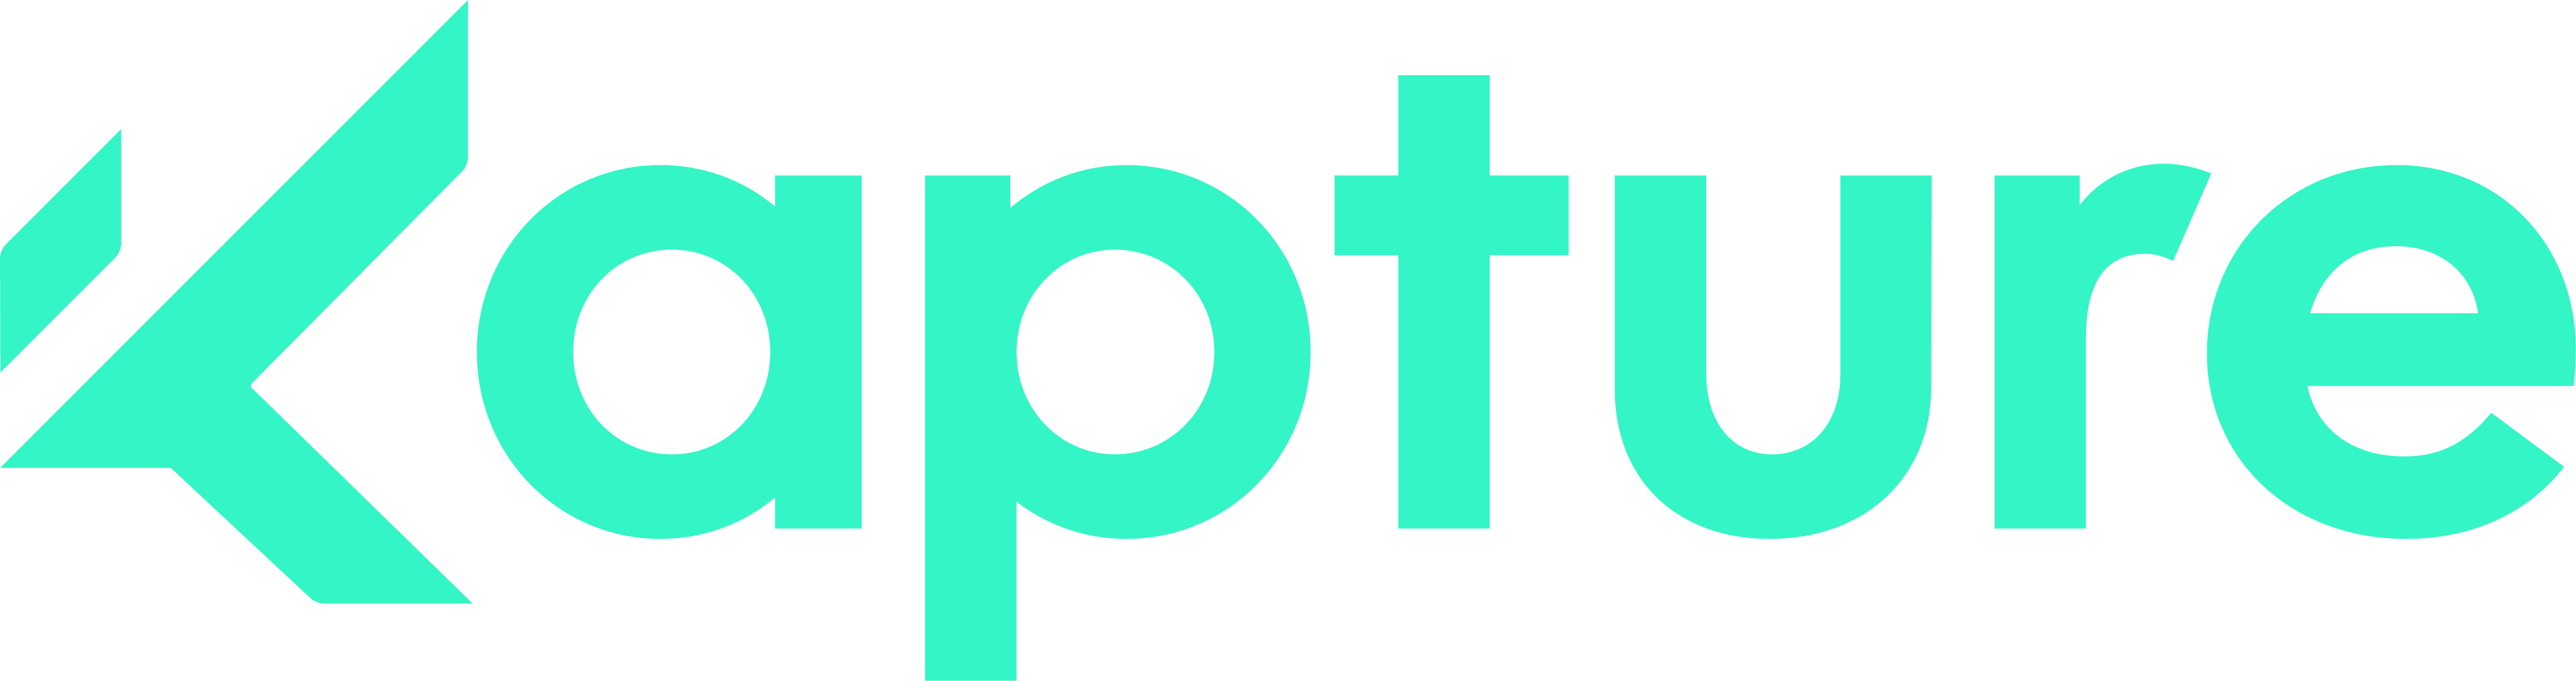 cropped-cropped-Kapture-Logo.png